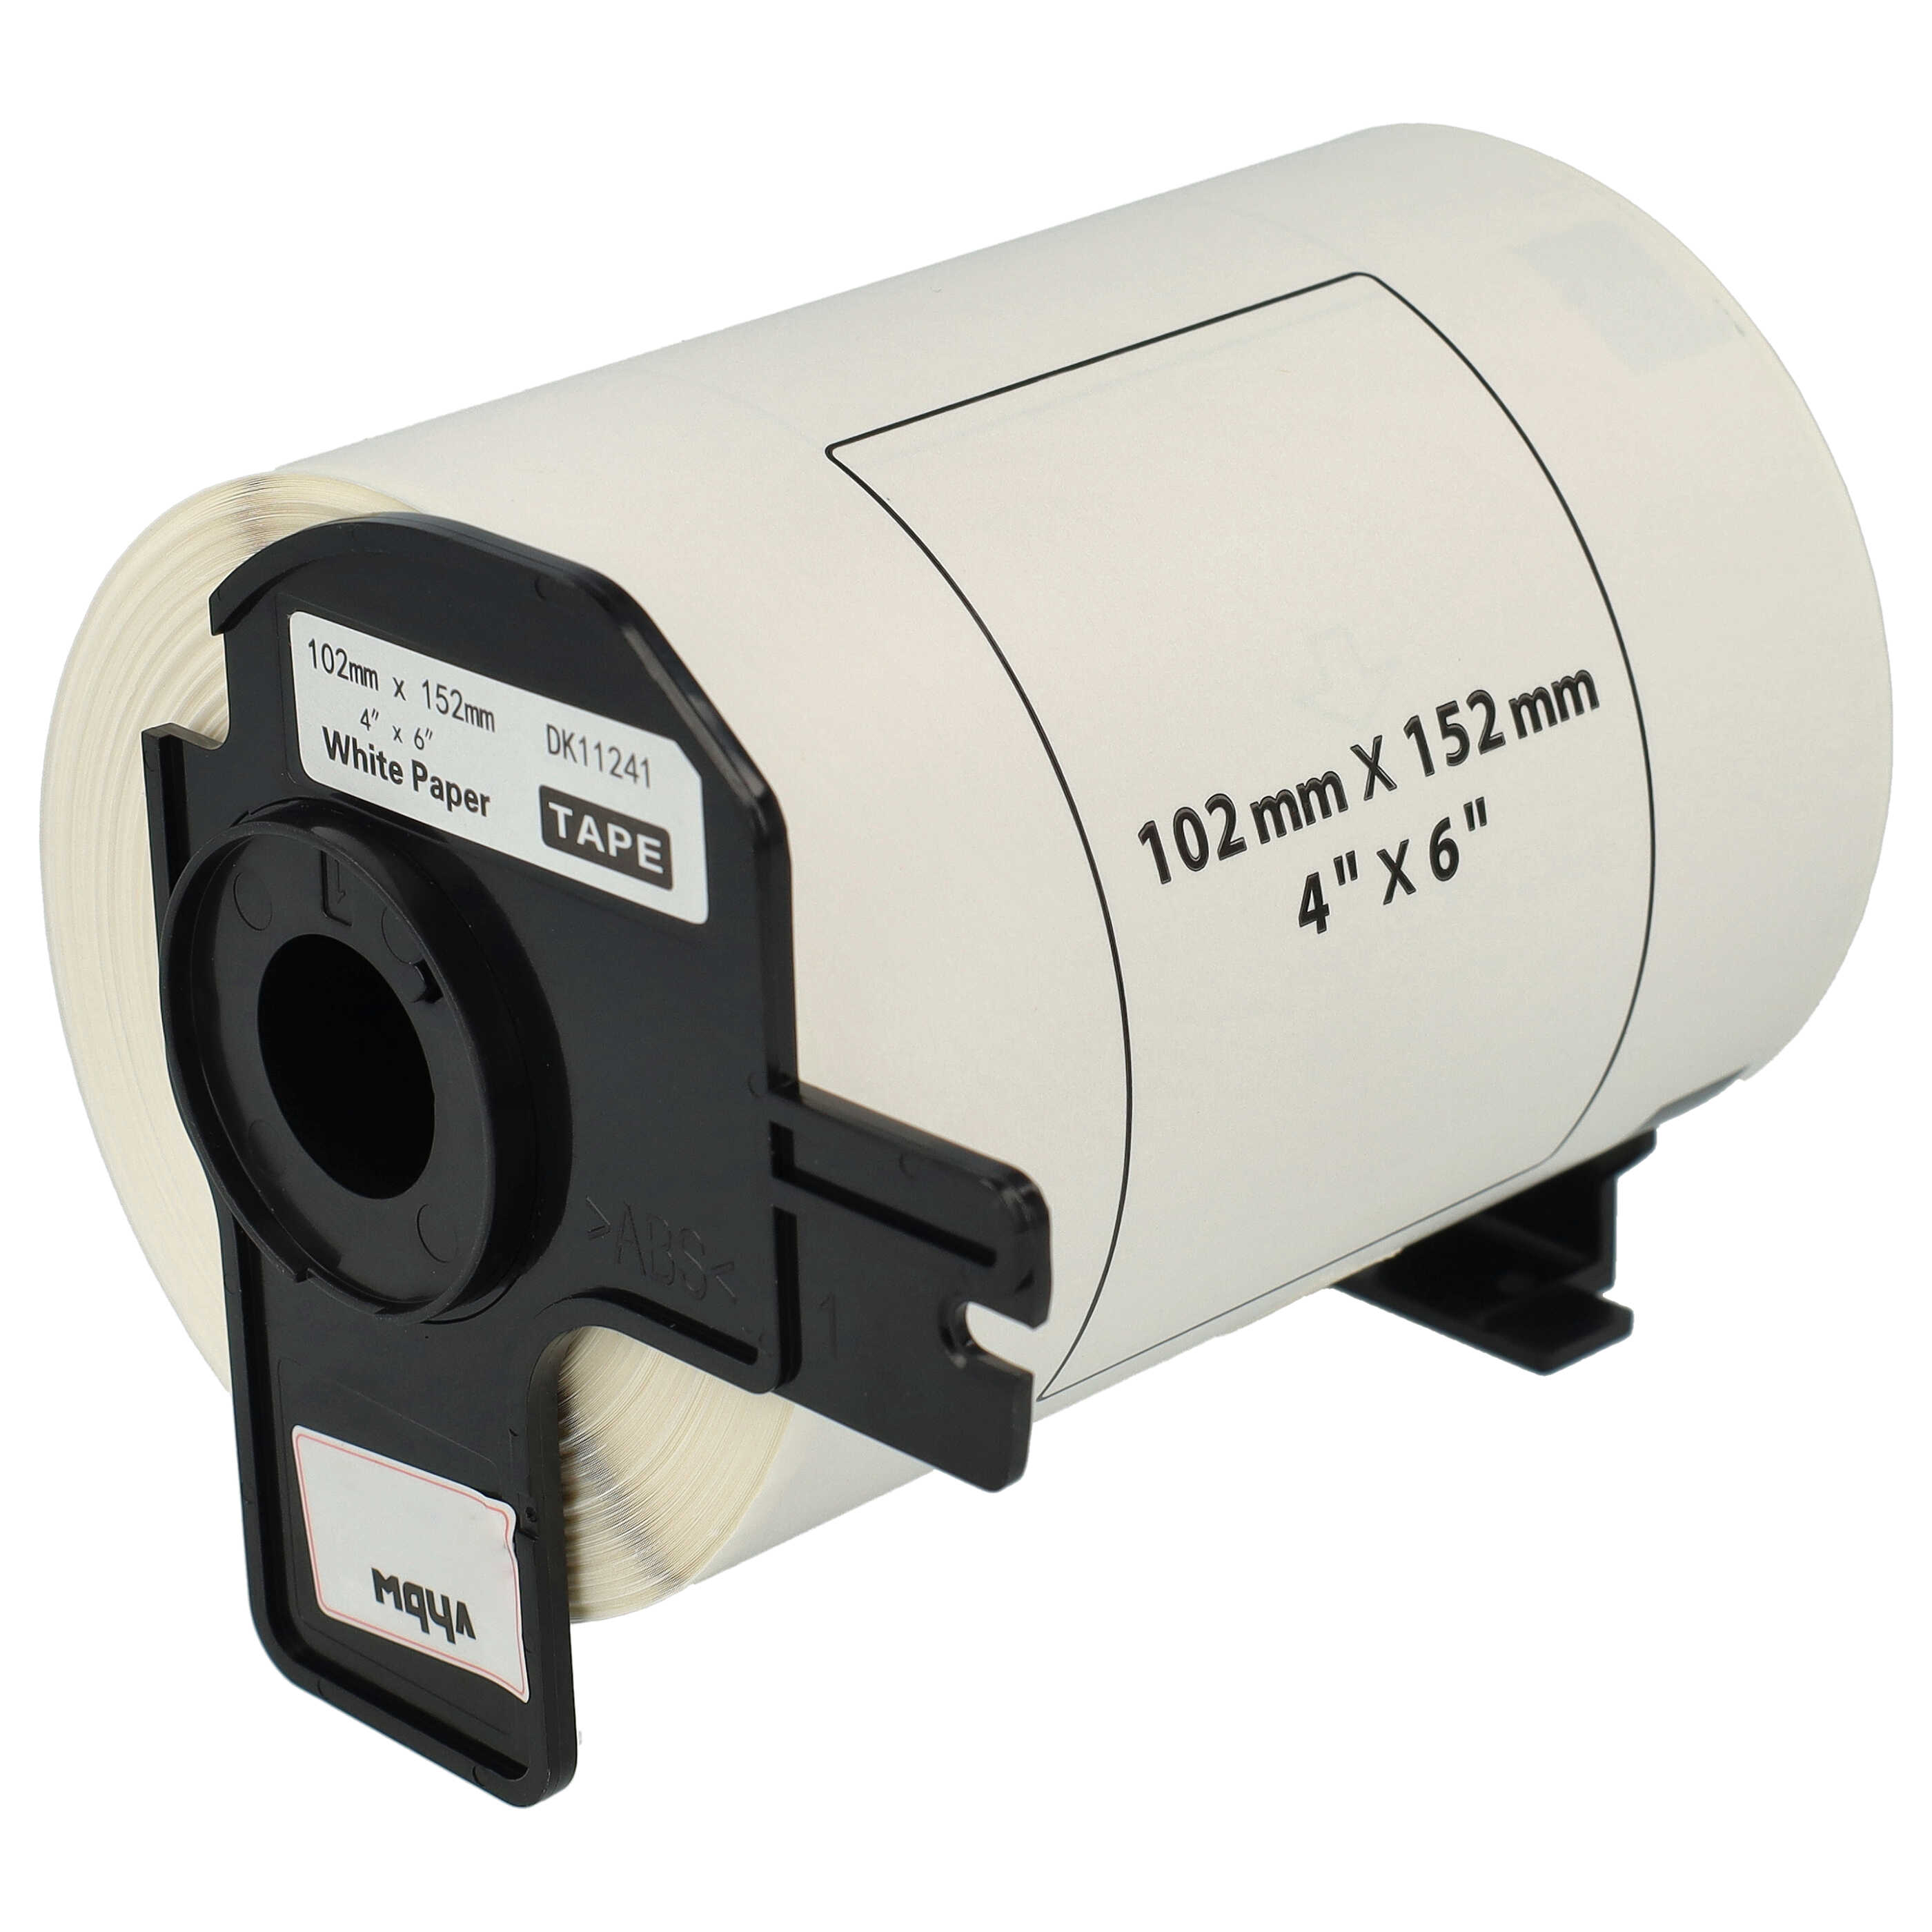 Etiketten als Ersatz für Brother DK-11241 für Etikettendrucker - Standard 102mm x 152mm + Halter